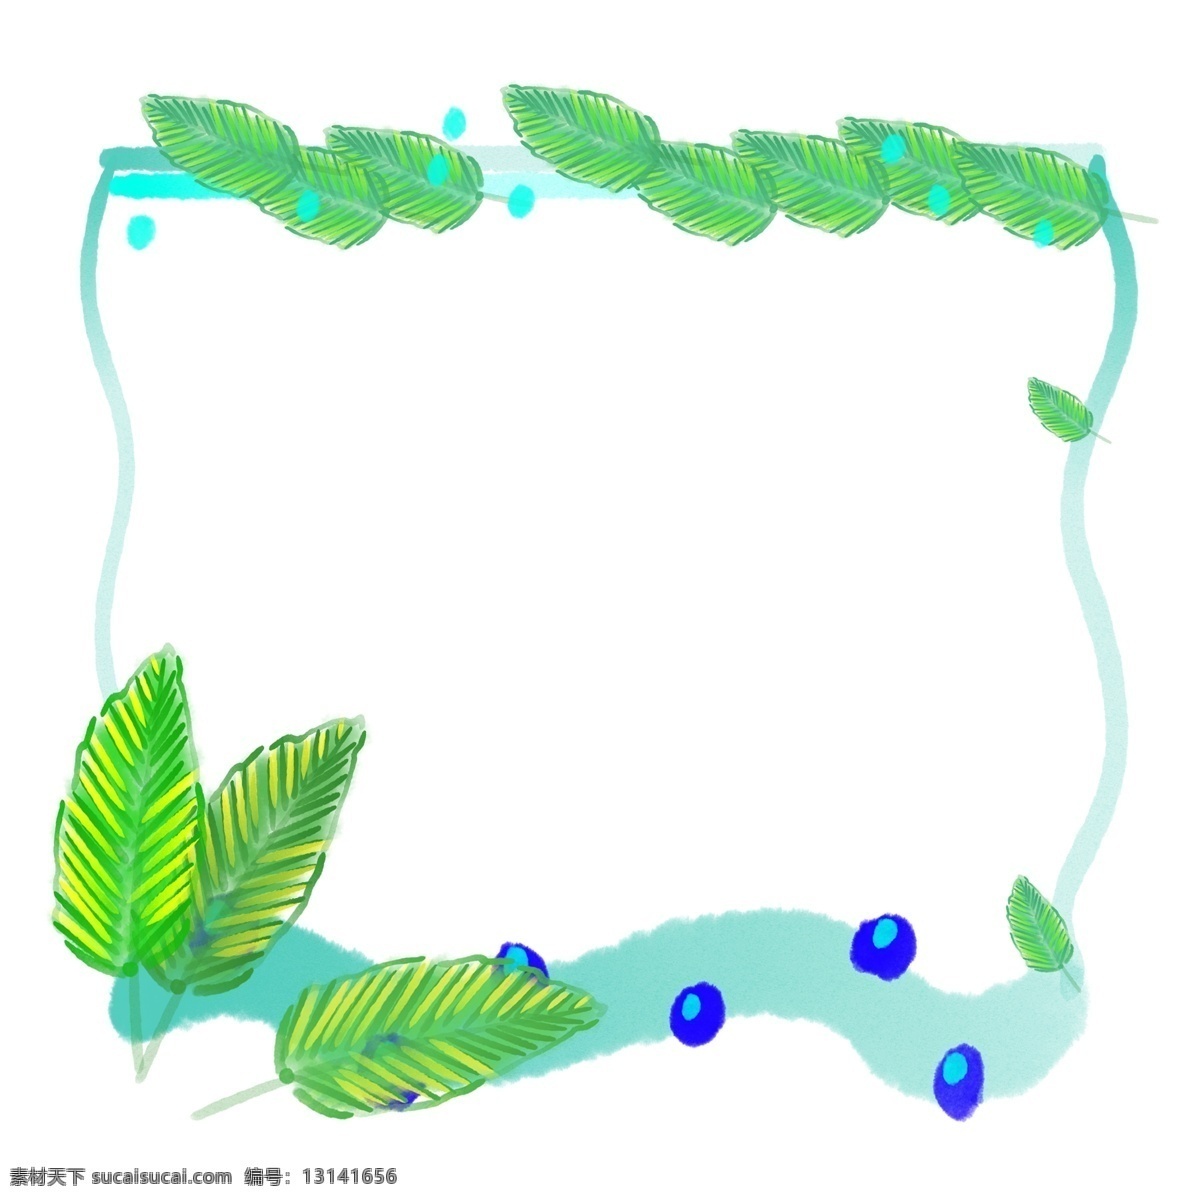 绿色 植物 叶子 边框 绿色的叶子 蓝色的边框 漂亮的叶子 植物的叶子 卡通的边框 不规则边框